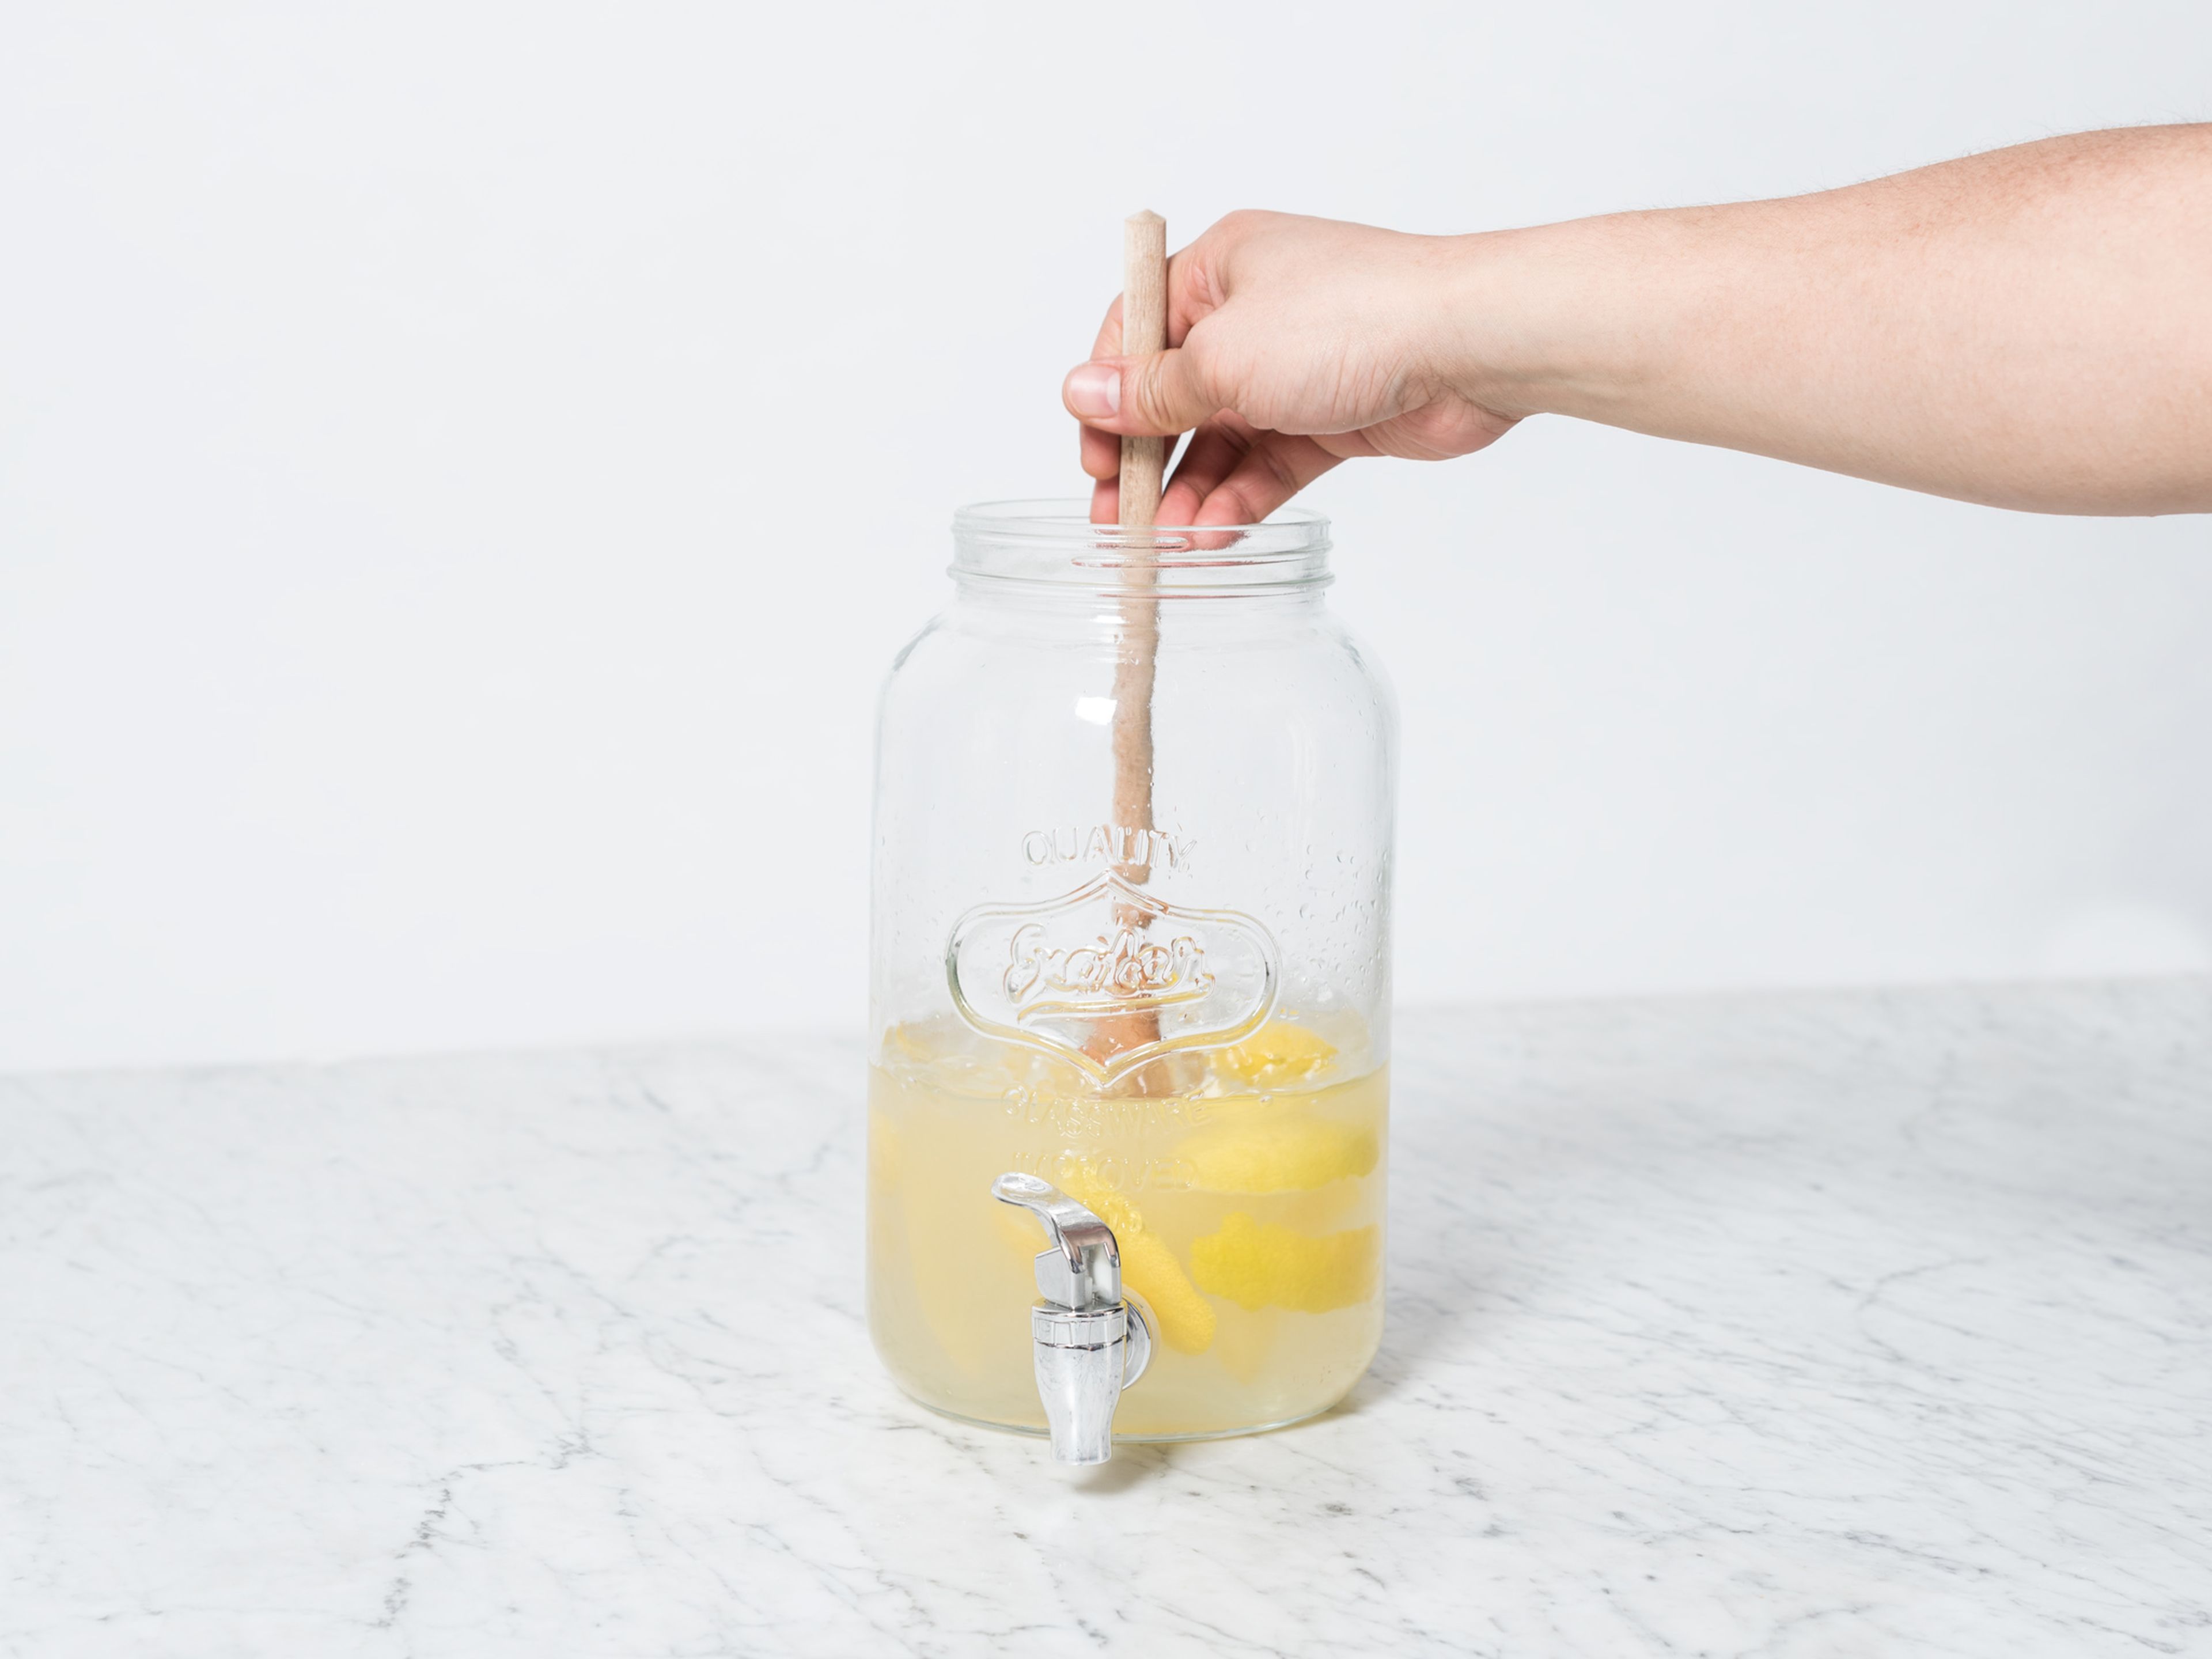 Zitronensaft und Wasser hinzugeben und verrühren bis sich der Zucker aufgelöst hat. Falls gewünscht, durch ein Sieb filtern. Abkühlen lassen und in einem Longdrinkglas auf Eiswürfeln servieren. Portwein nach Geschmack dazugeben.